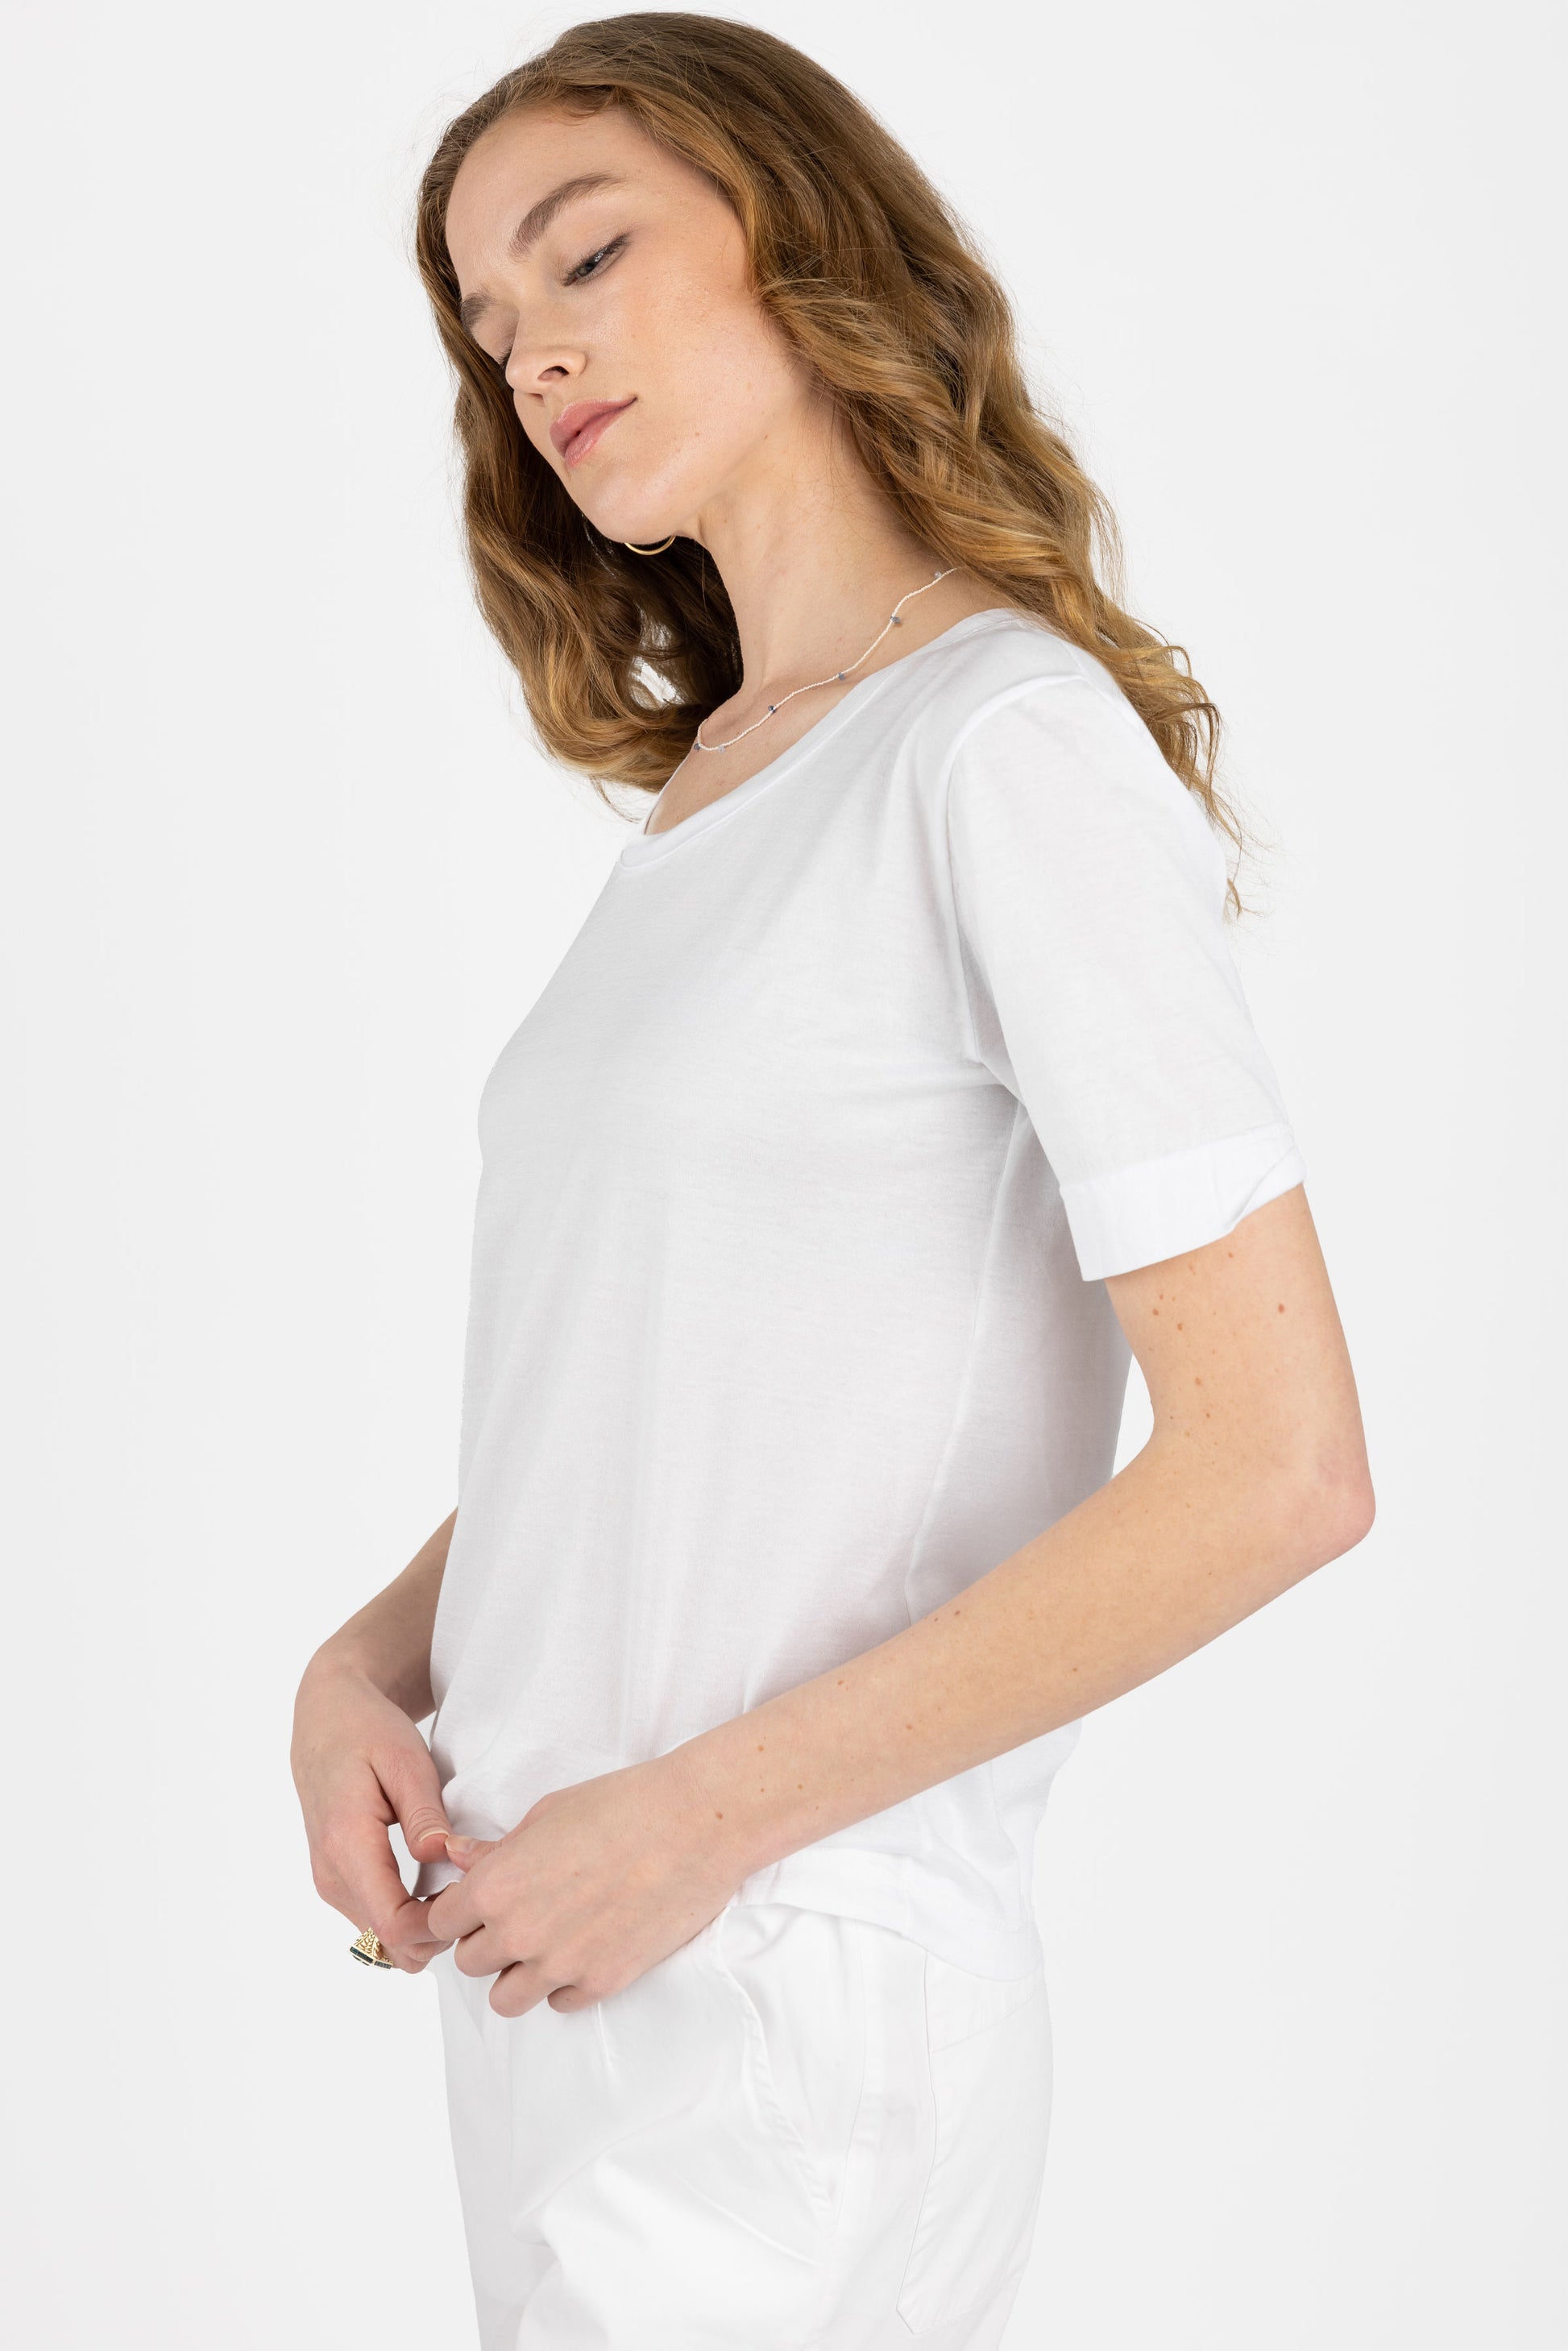 PRIVATE 0204 Fine Cotton T-Shirt in White